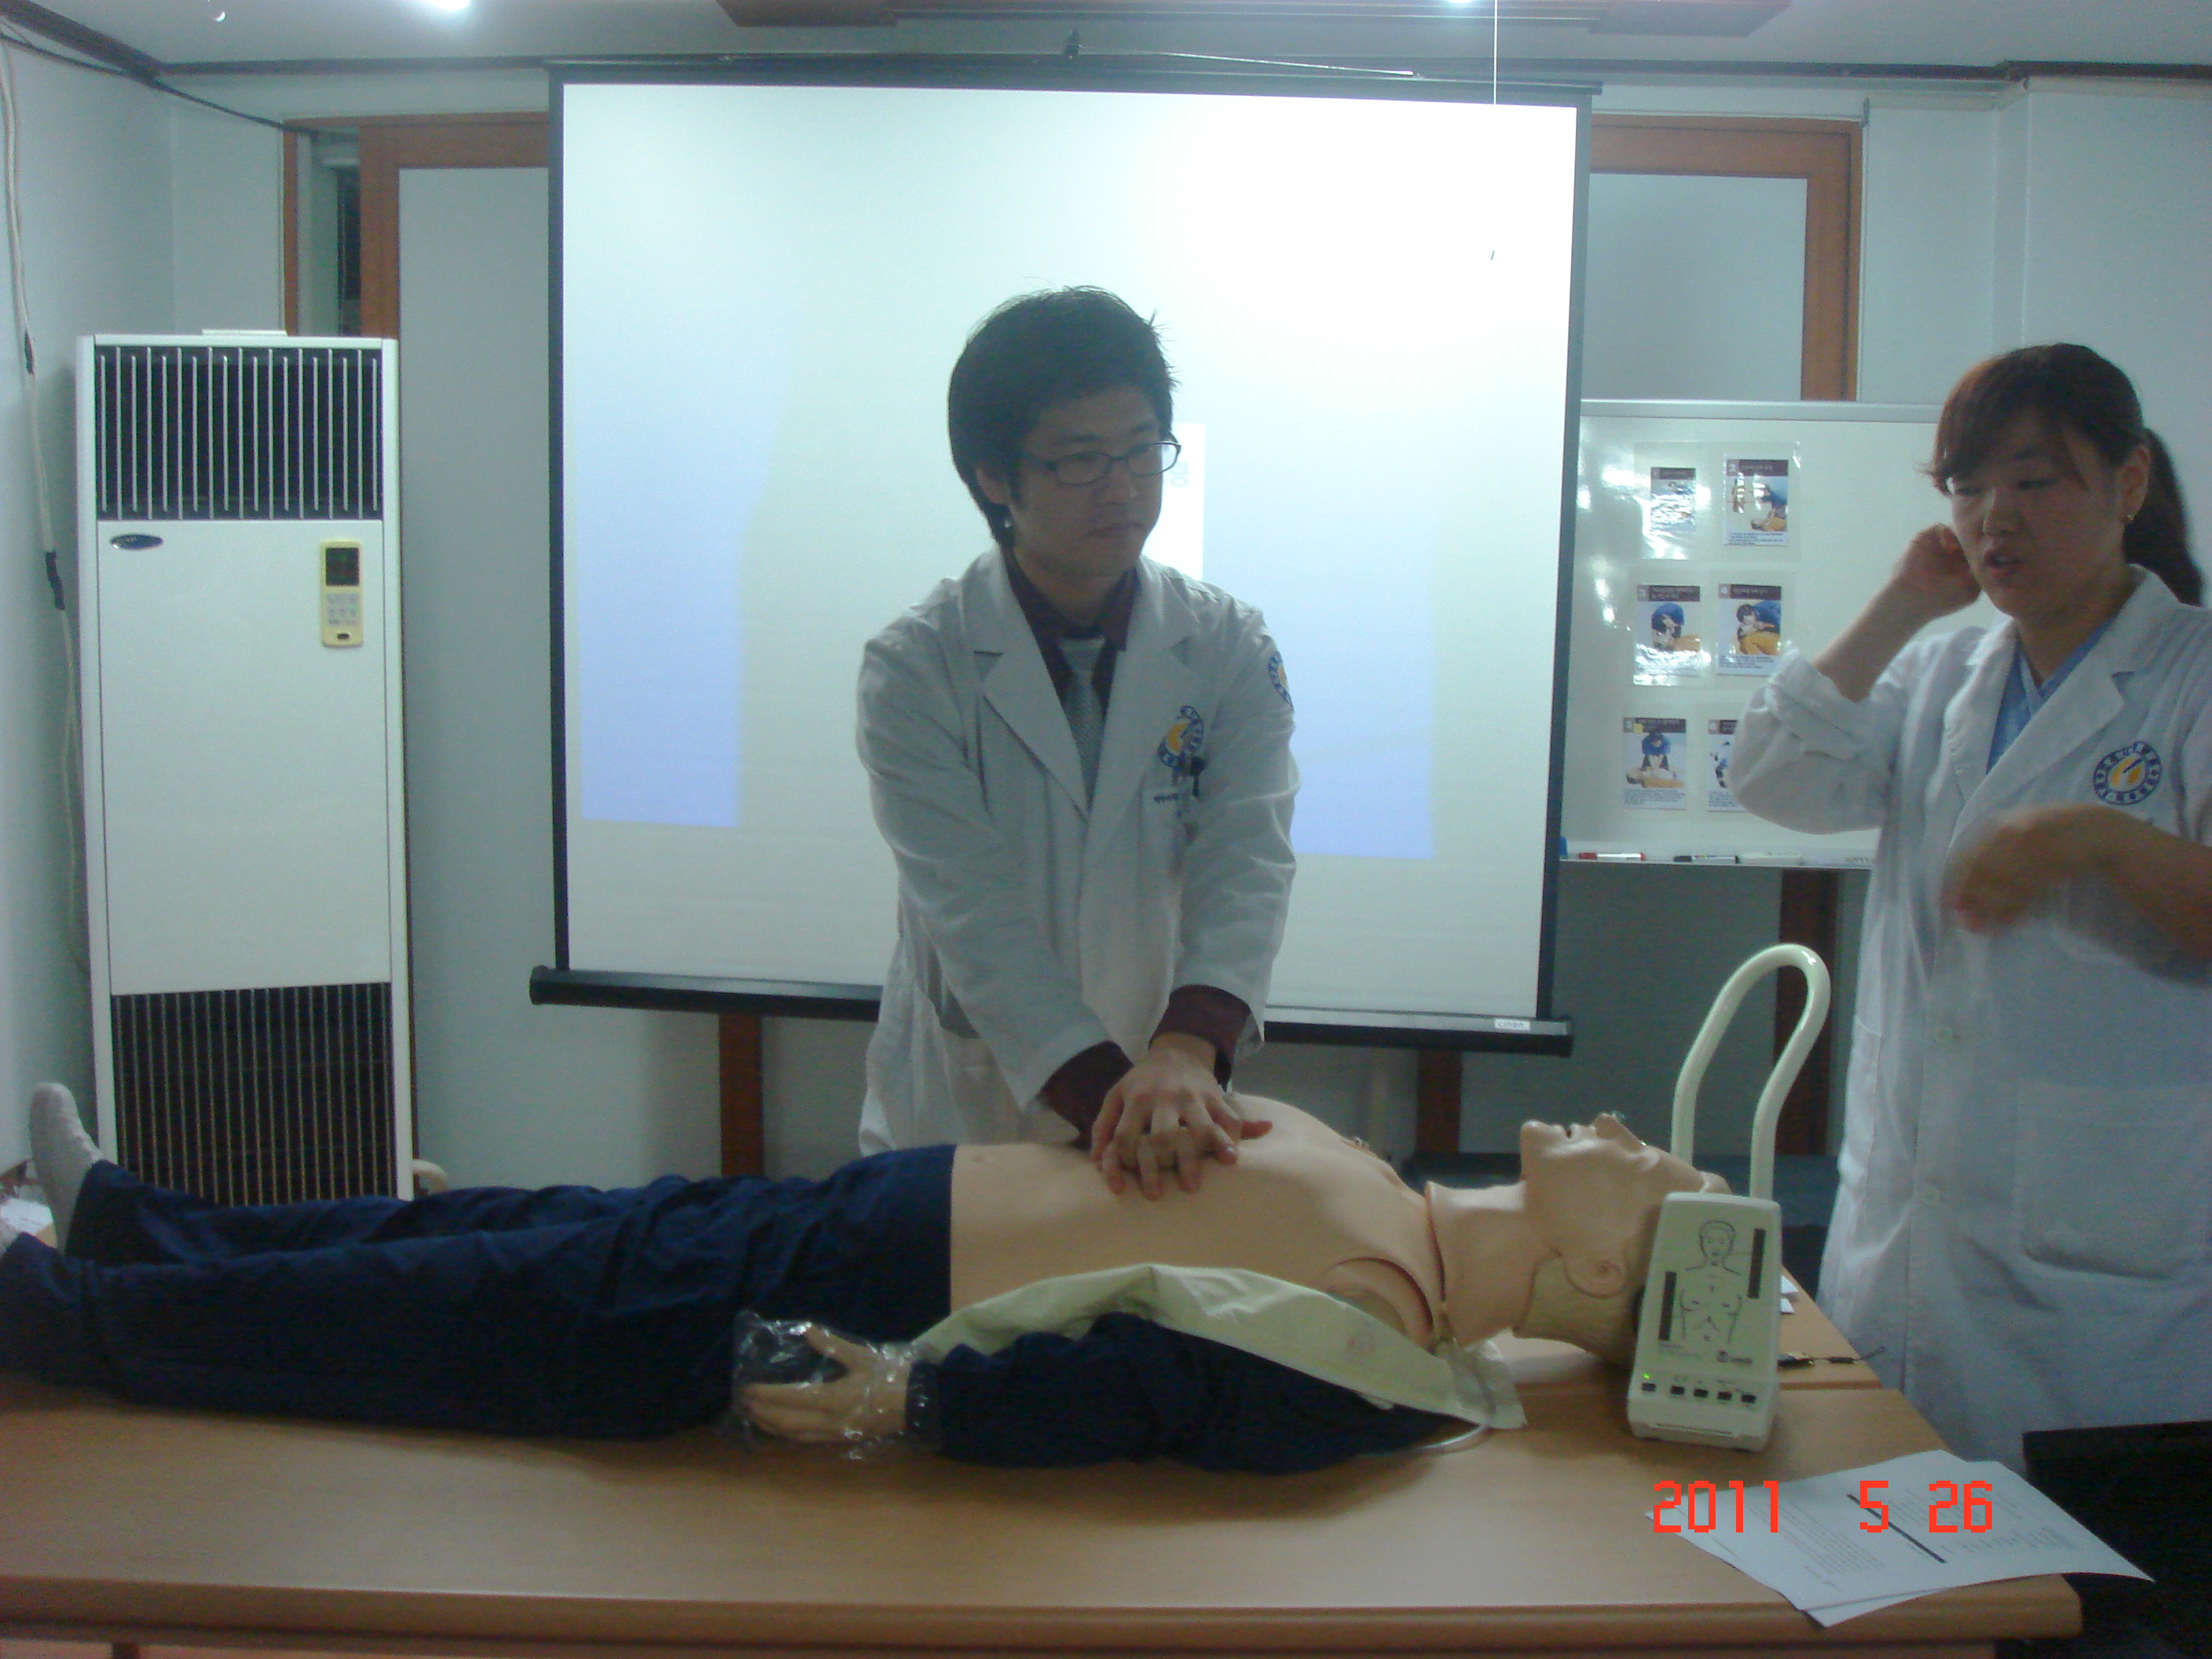 [강북점] 2011년 5월 26일 - 전직원 직무교육 실시 (심폐소생술, CPR) 게시글의 6번째 첨부파일입니다.